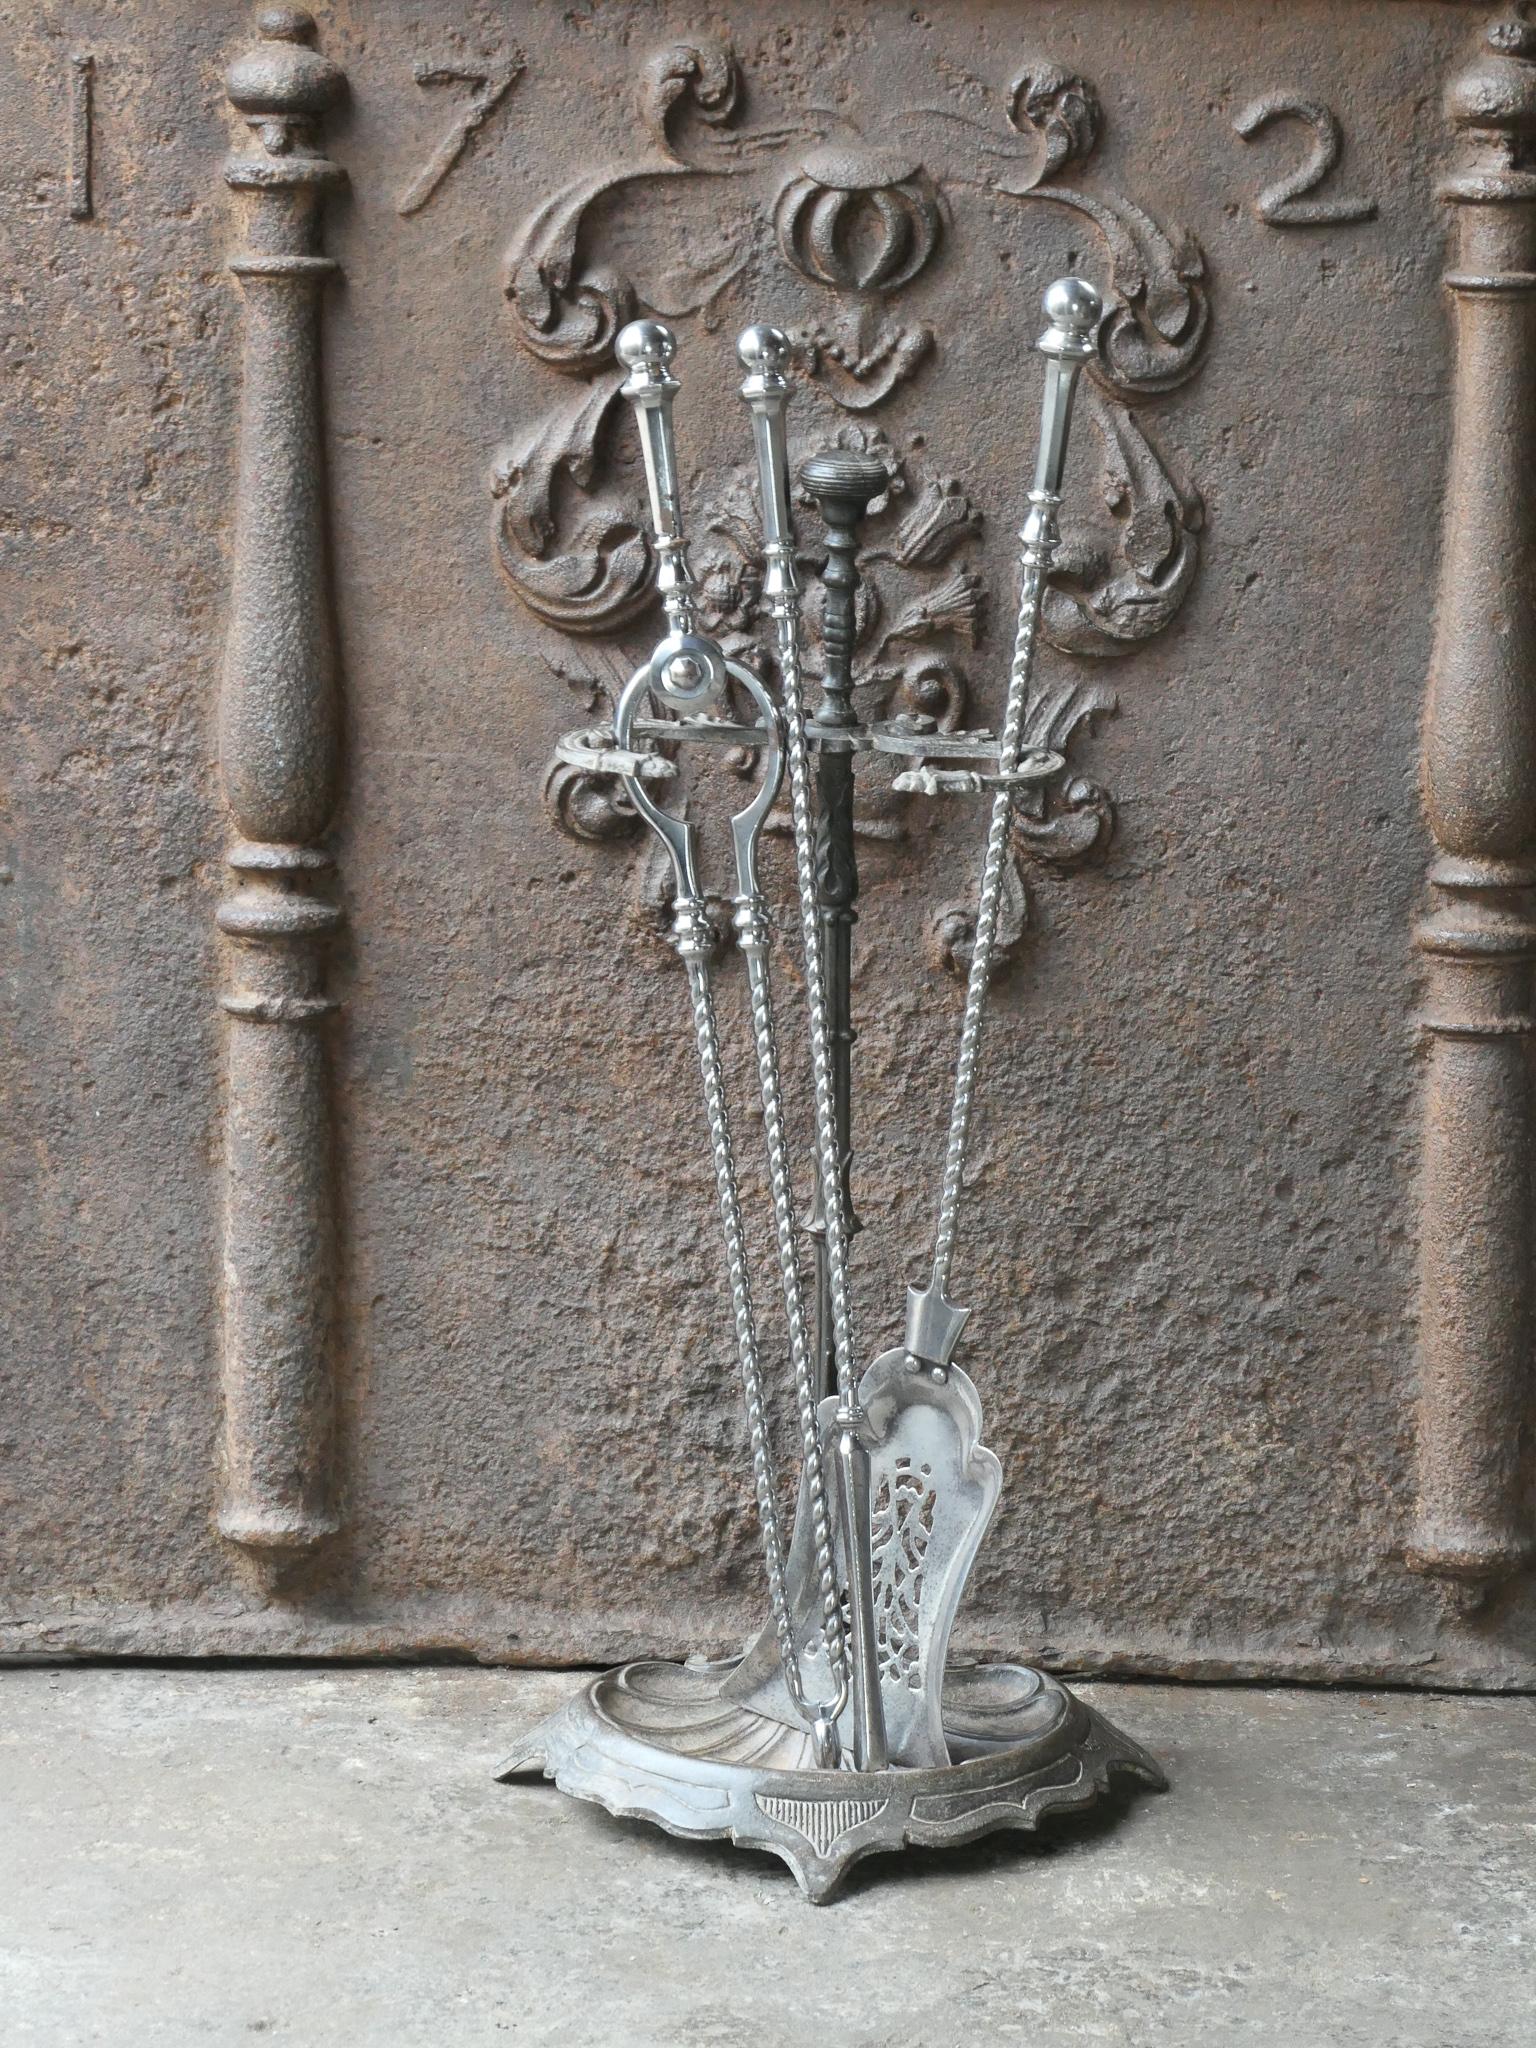 Bel ensemble d'outils de cheminée de style géorgien anglais du 18e - 19e siècle avec de belles décorations. Le set d'outils comprend une pince, une pelle, un tisonnier et un support. Le support est en fonte. Les outils sont en acier poli. L'ensemble